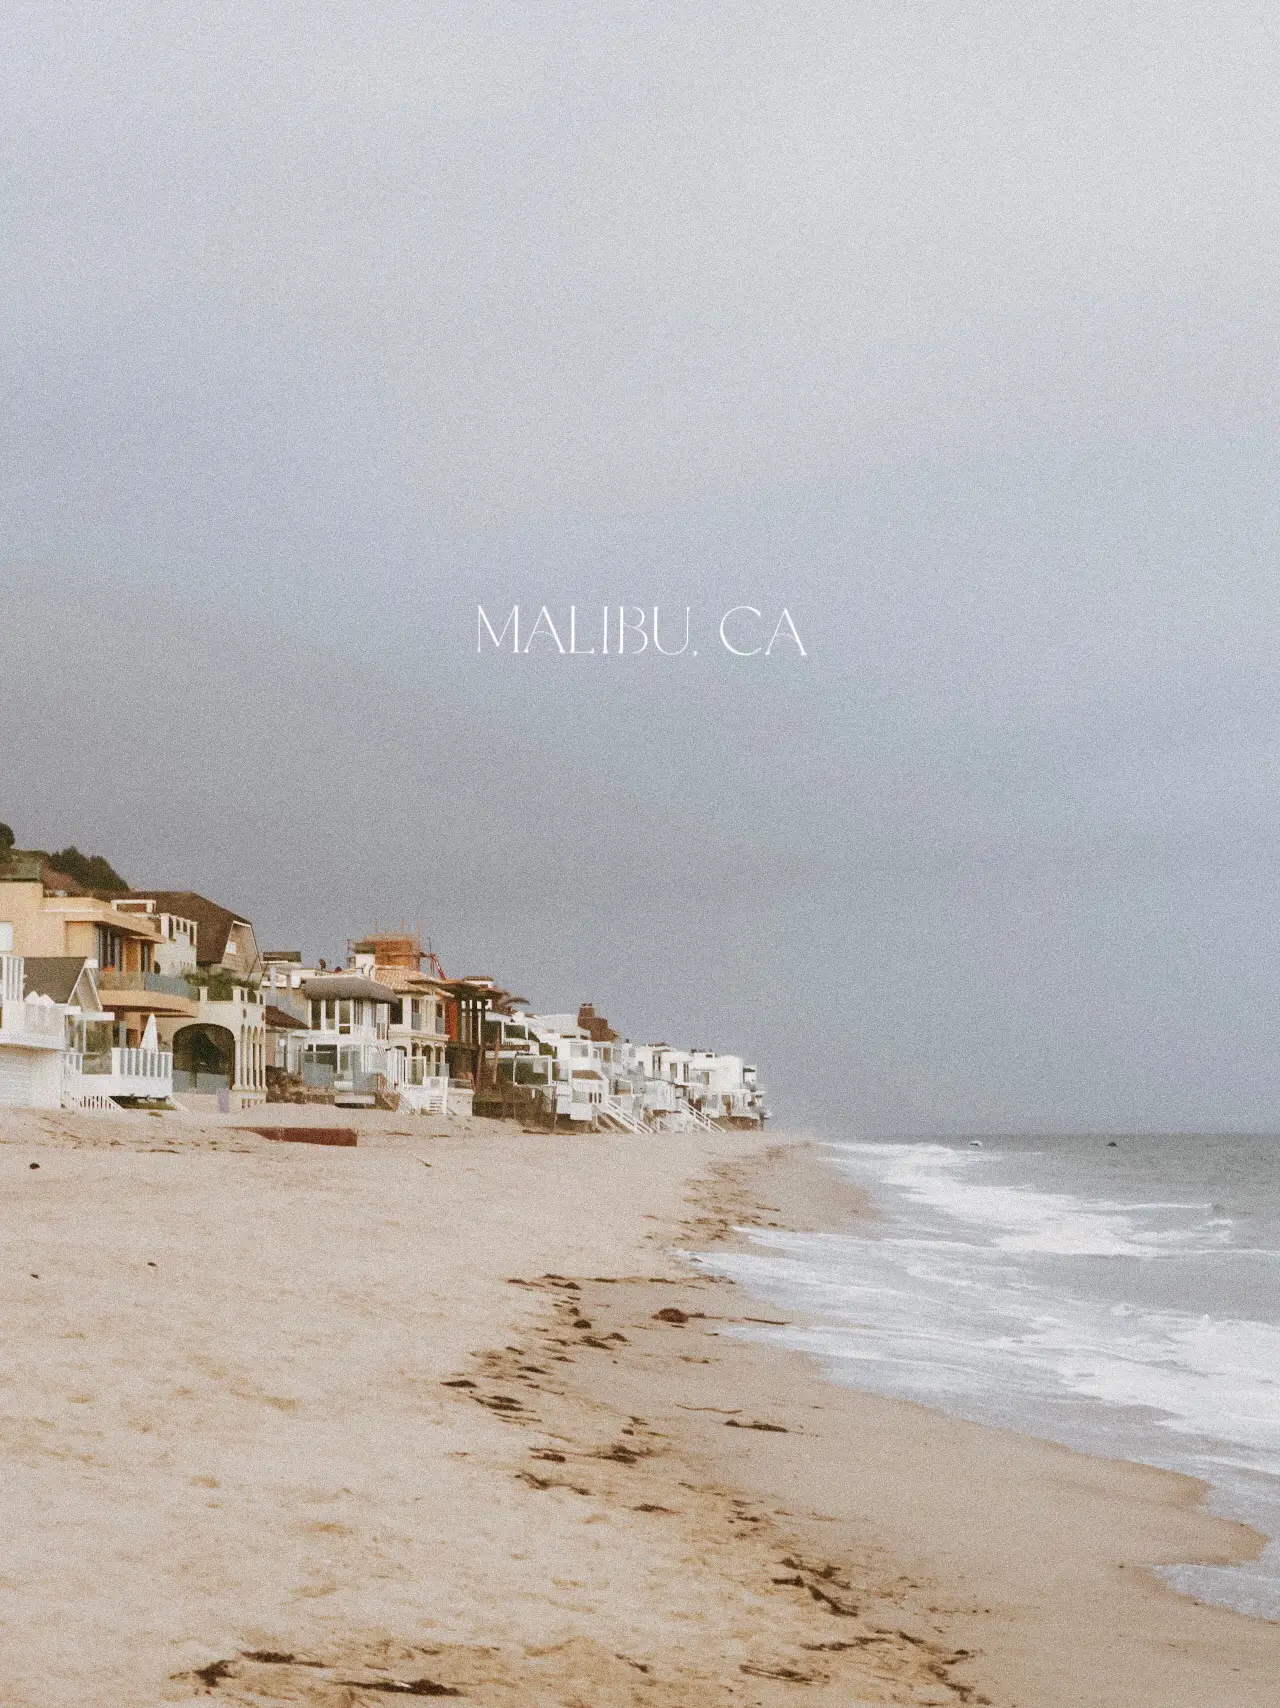 Visit Zuma Beach: A Coastal Gem in Malibu